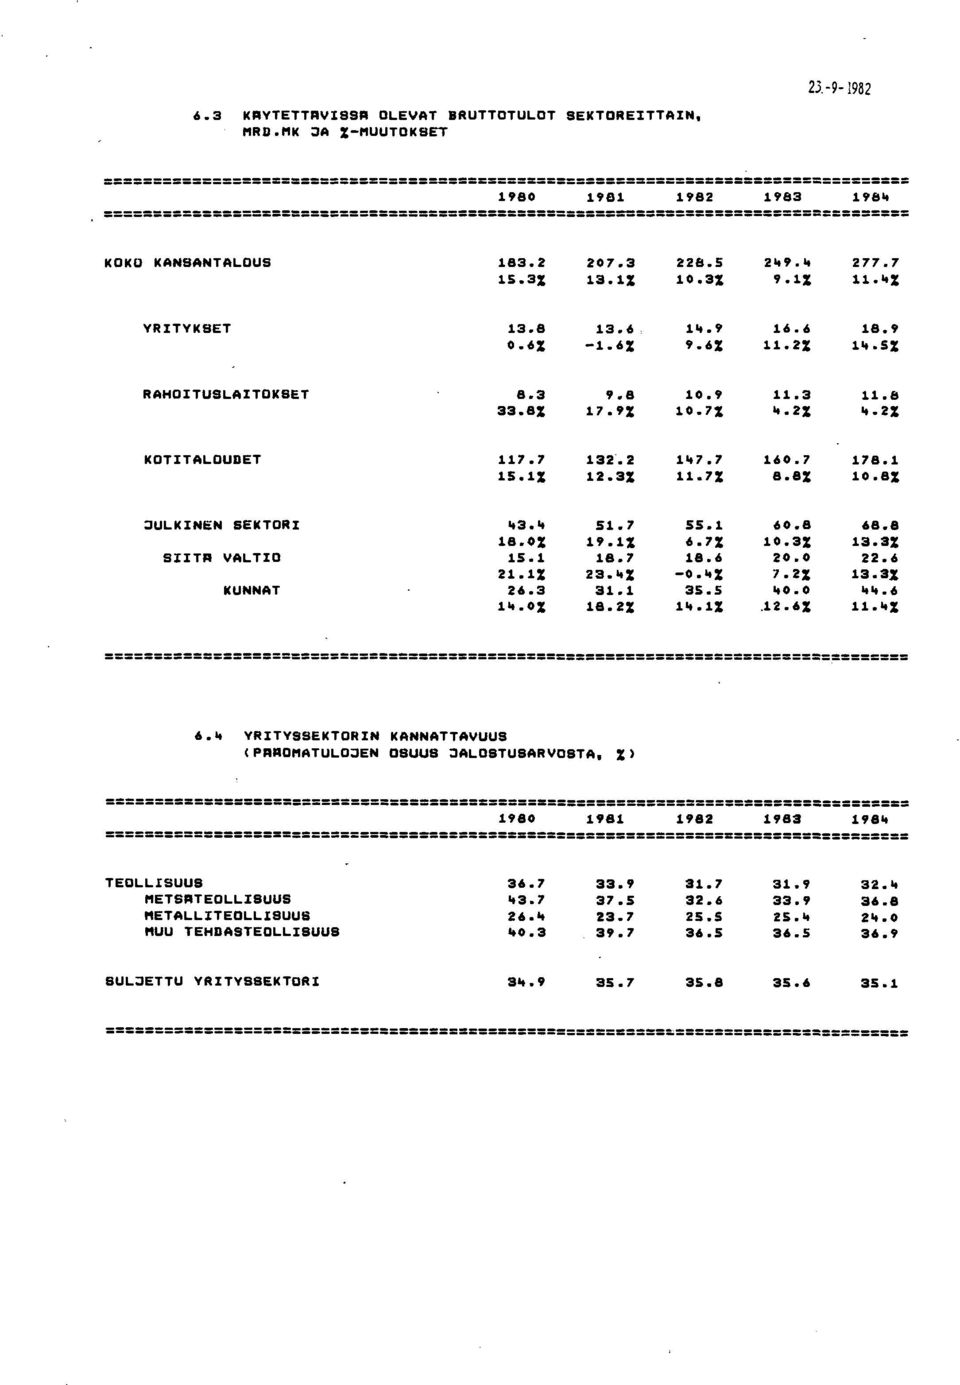 3% 11.7% 8.8% 10.8% :::JULKINEN SEKTORI "3." 51.7 55.1 60.8 68.8 18.0% 19.1% 6.7% 10.3% 13.3% SIlTA VALTIO 15.1 18.7 18.6 2 22.6 21.1% 23...% 0...% 7.2% 13.3% KUNNAT 26.3 31.1 35.5 "... 6 1".0% 18.